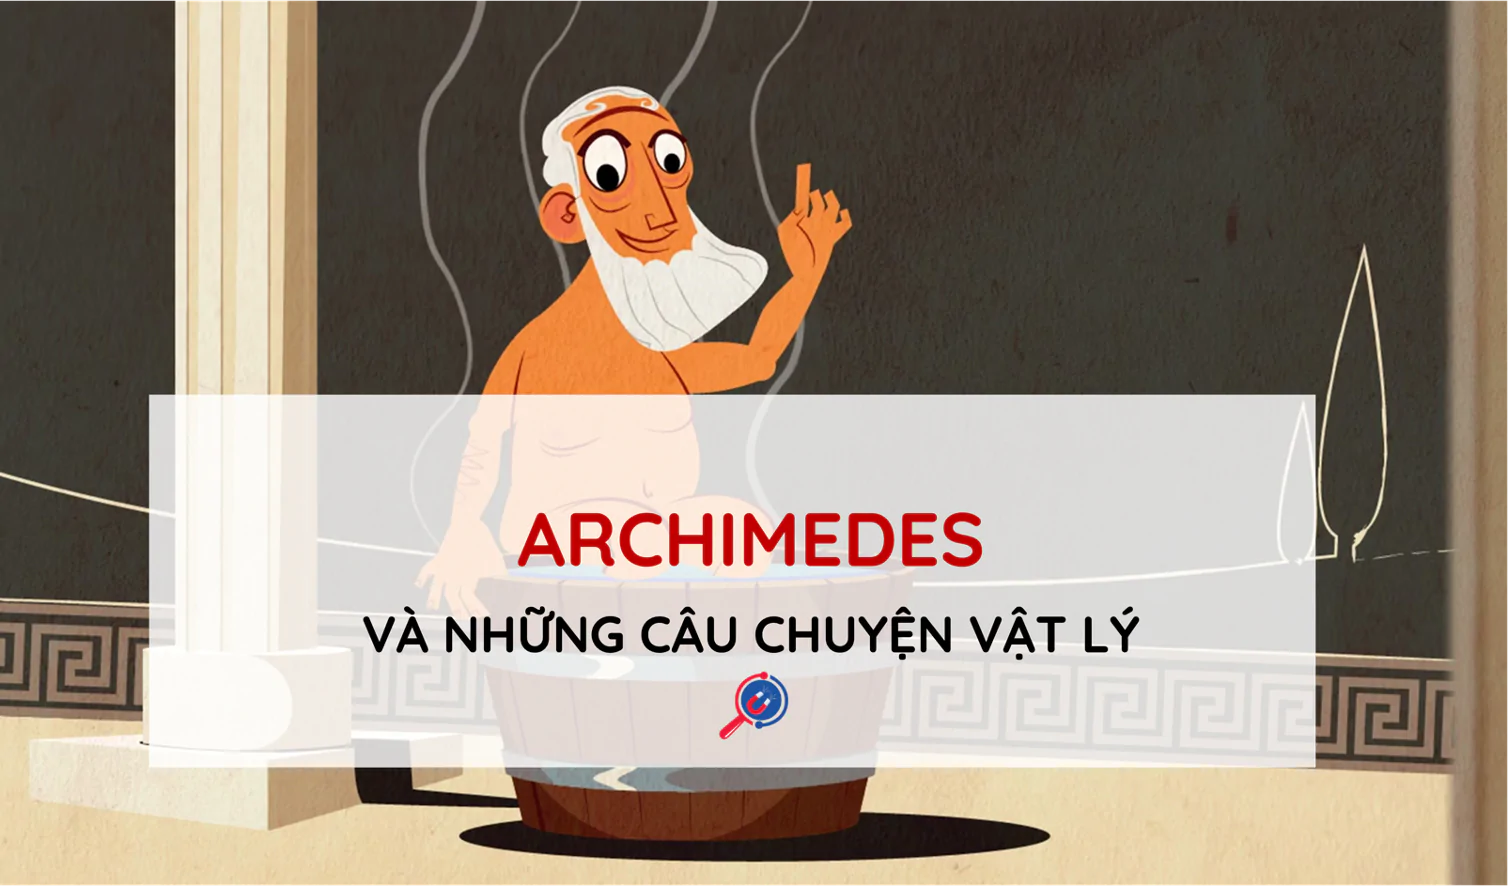 Archimedes cởi truồng chạy khắp nơi và những câu chuyện vật lý